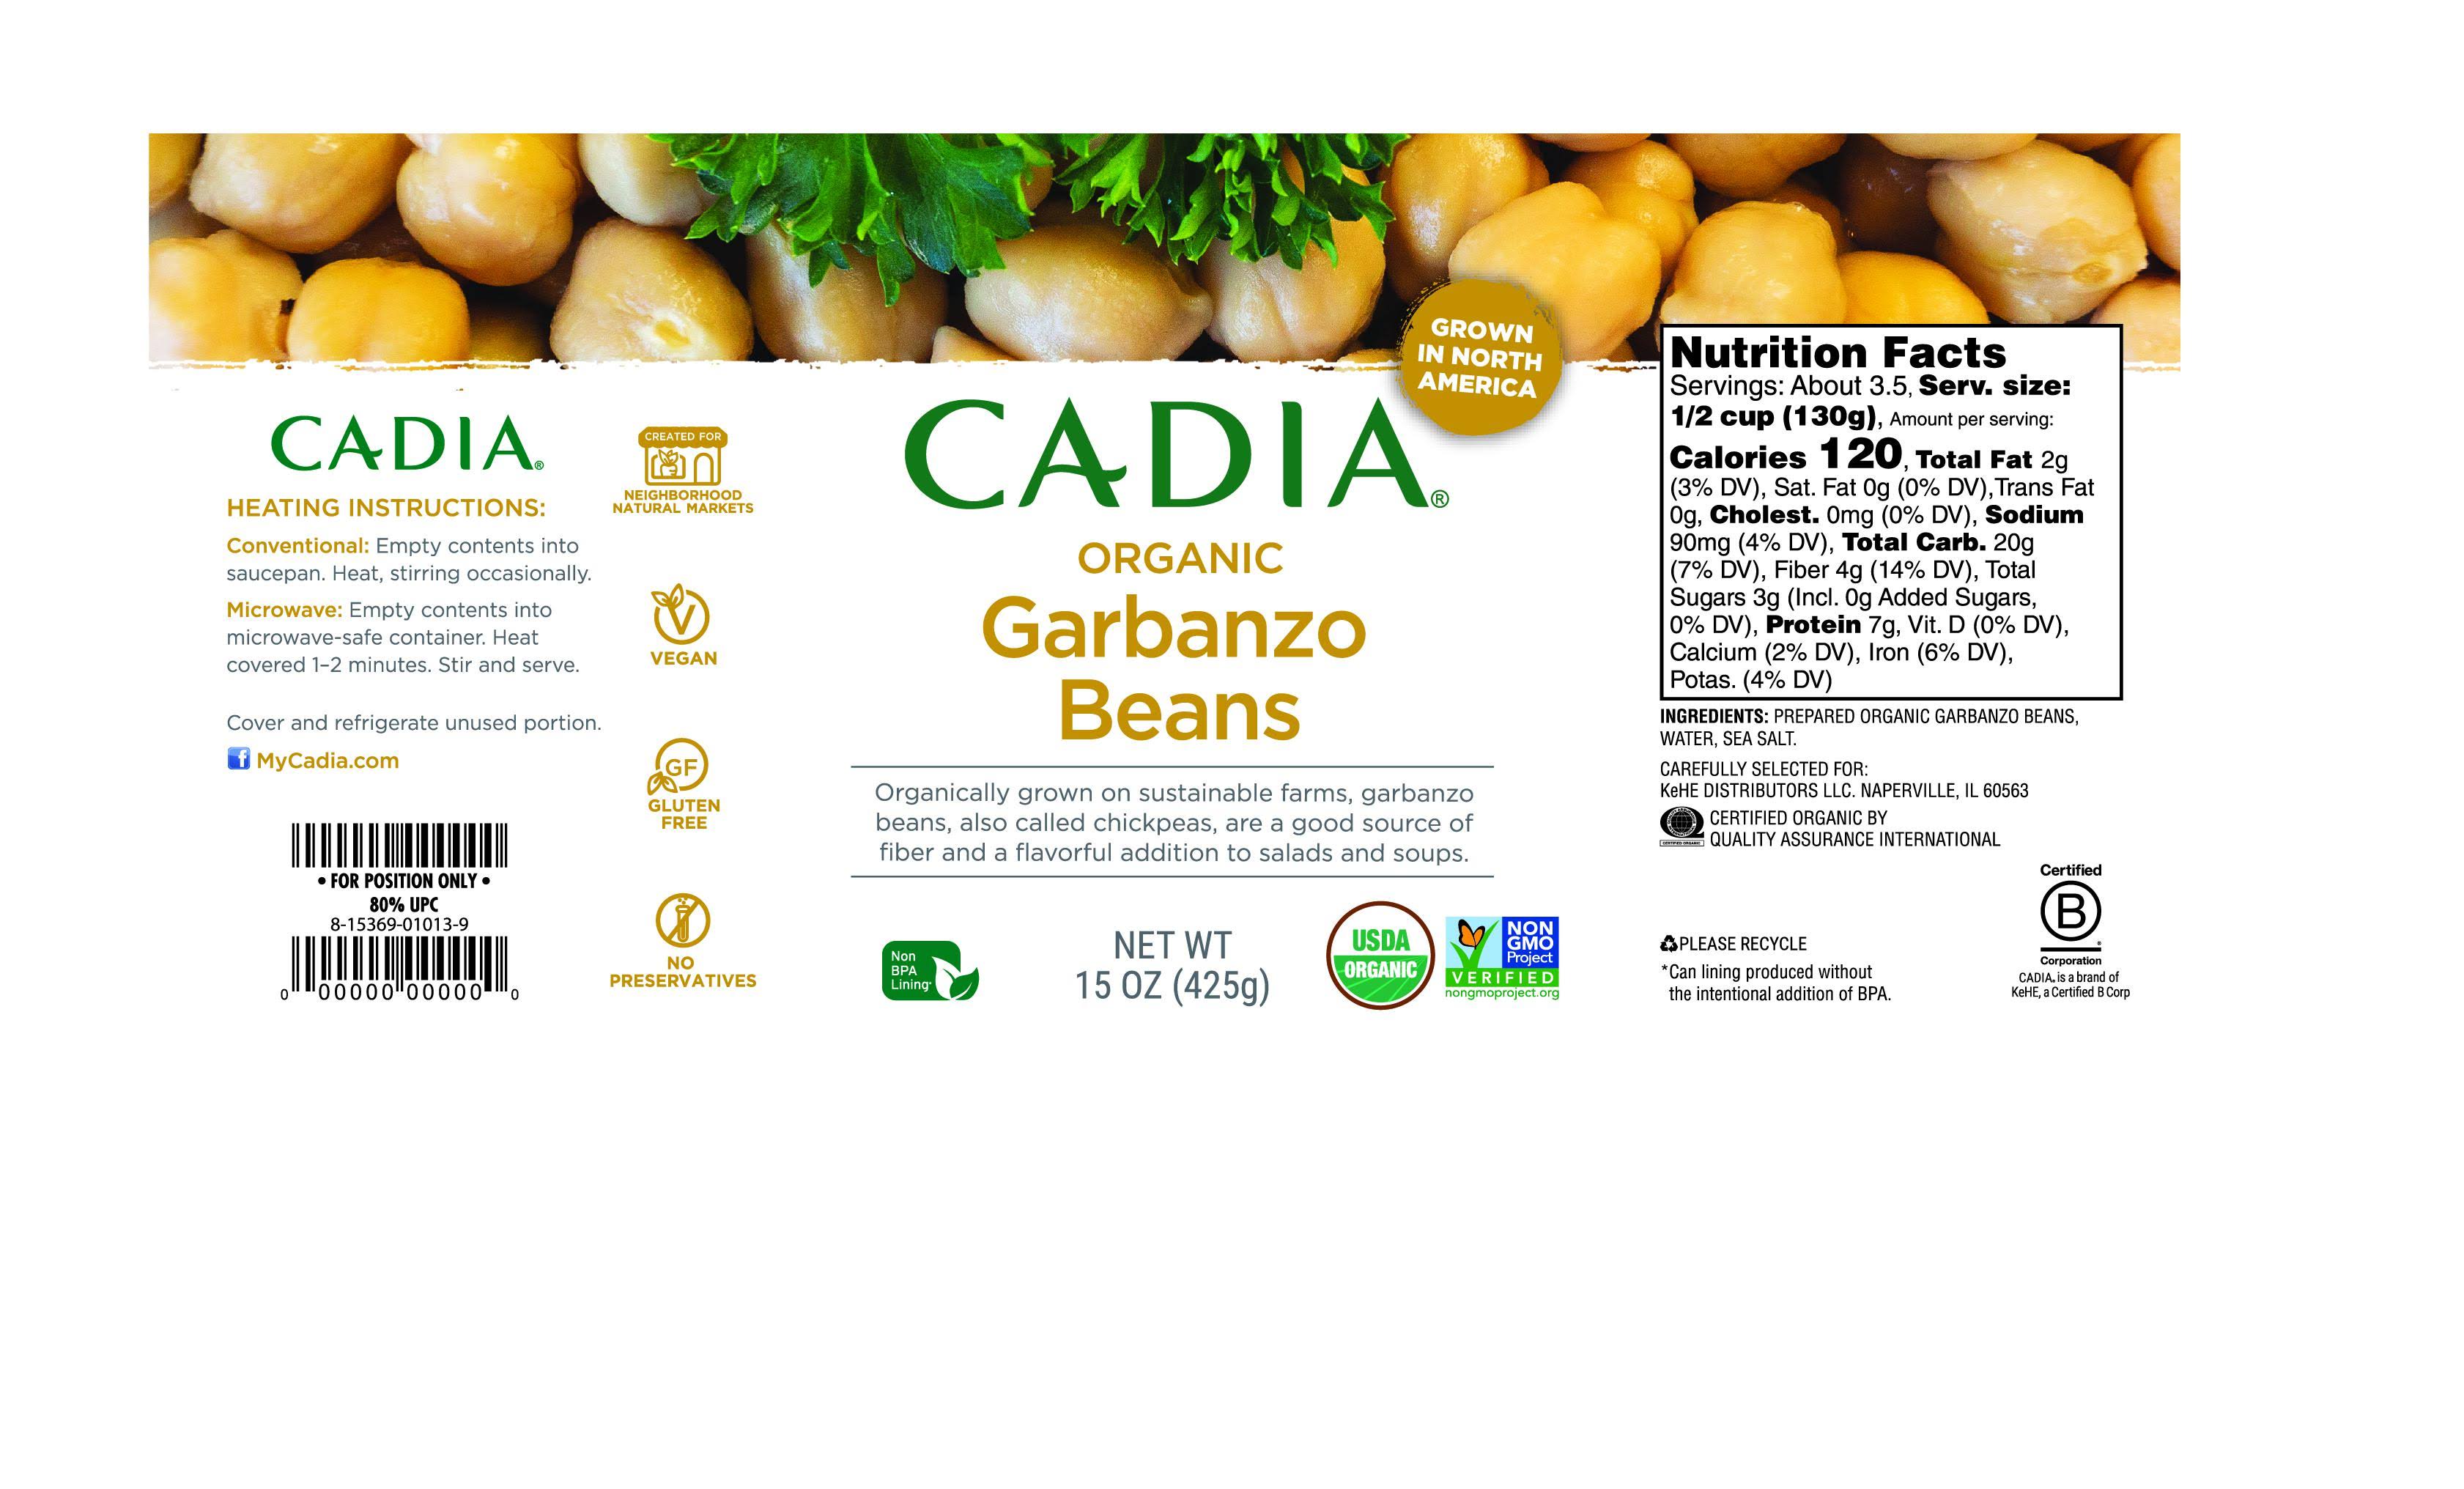 Cadia - Garbanzo Beans, 15 Oz